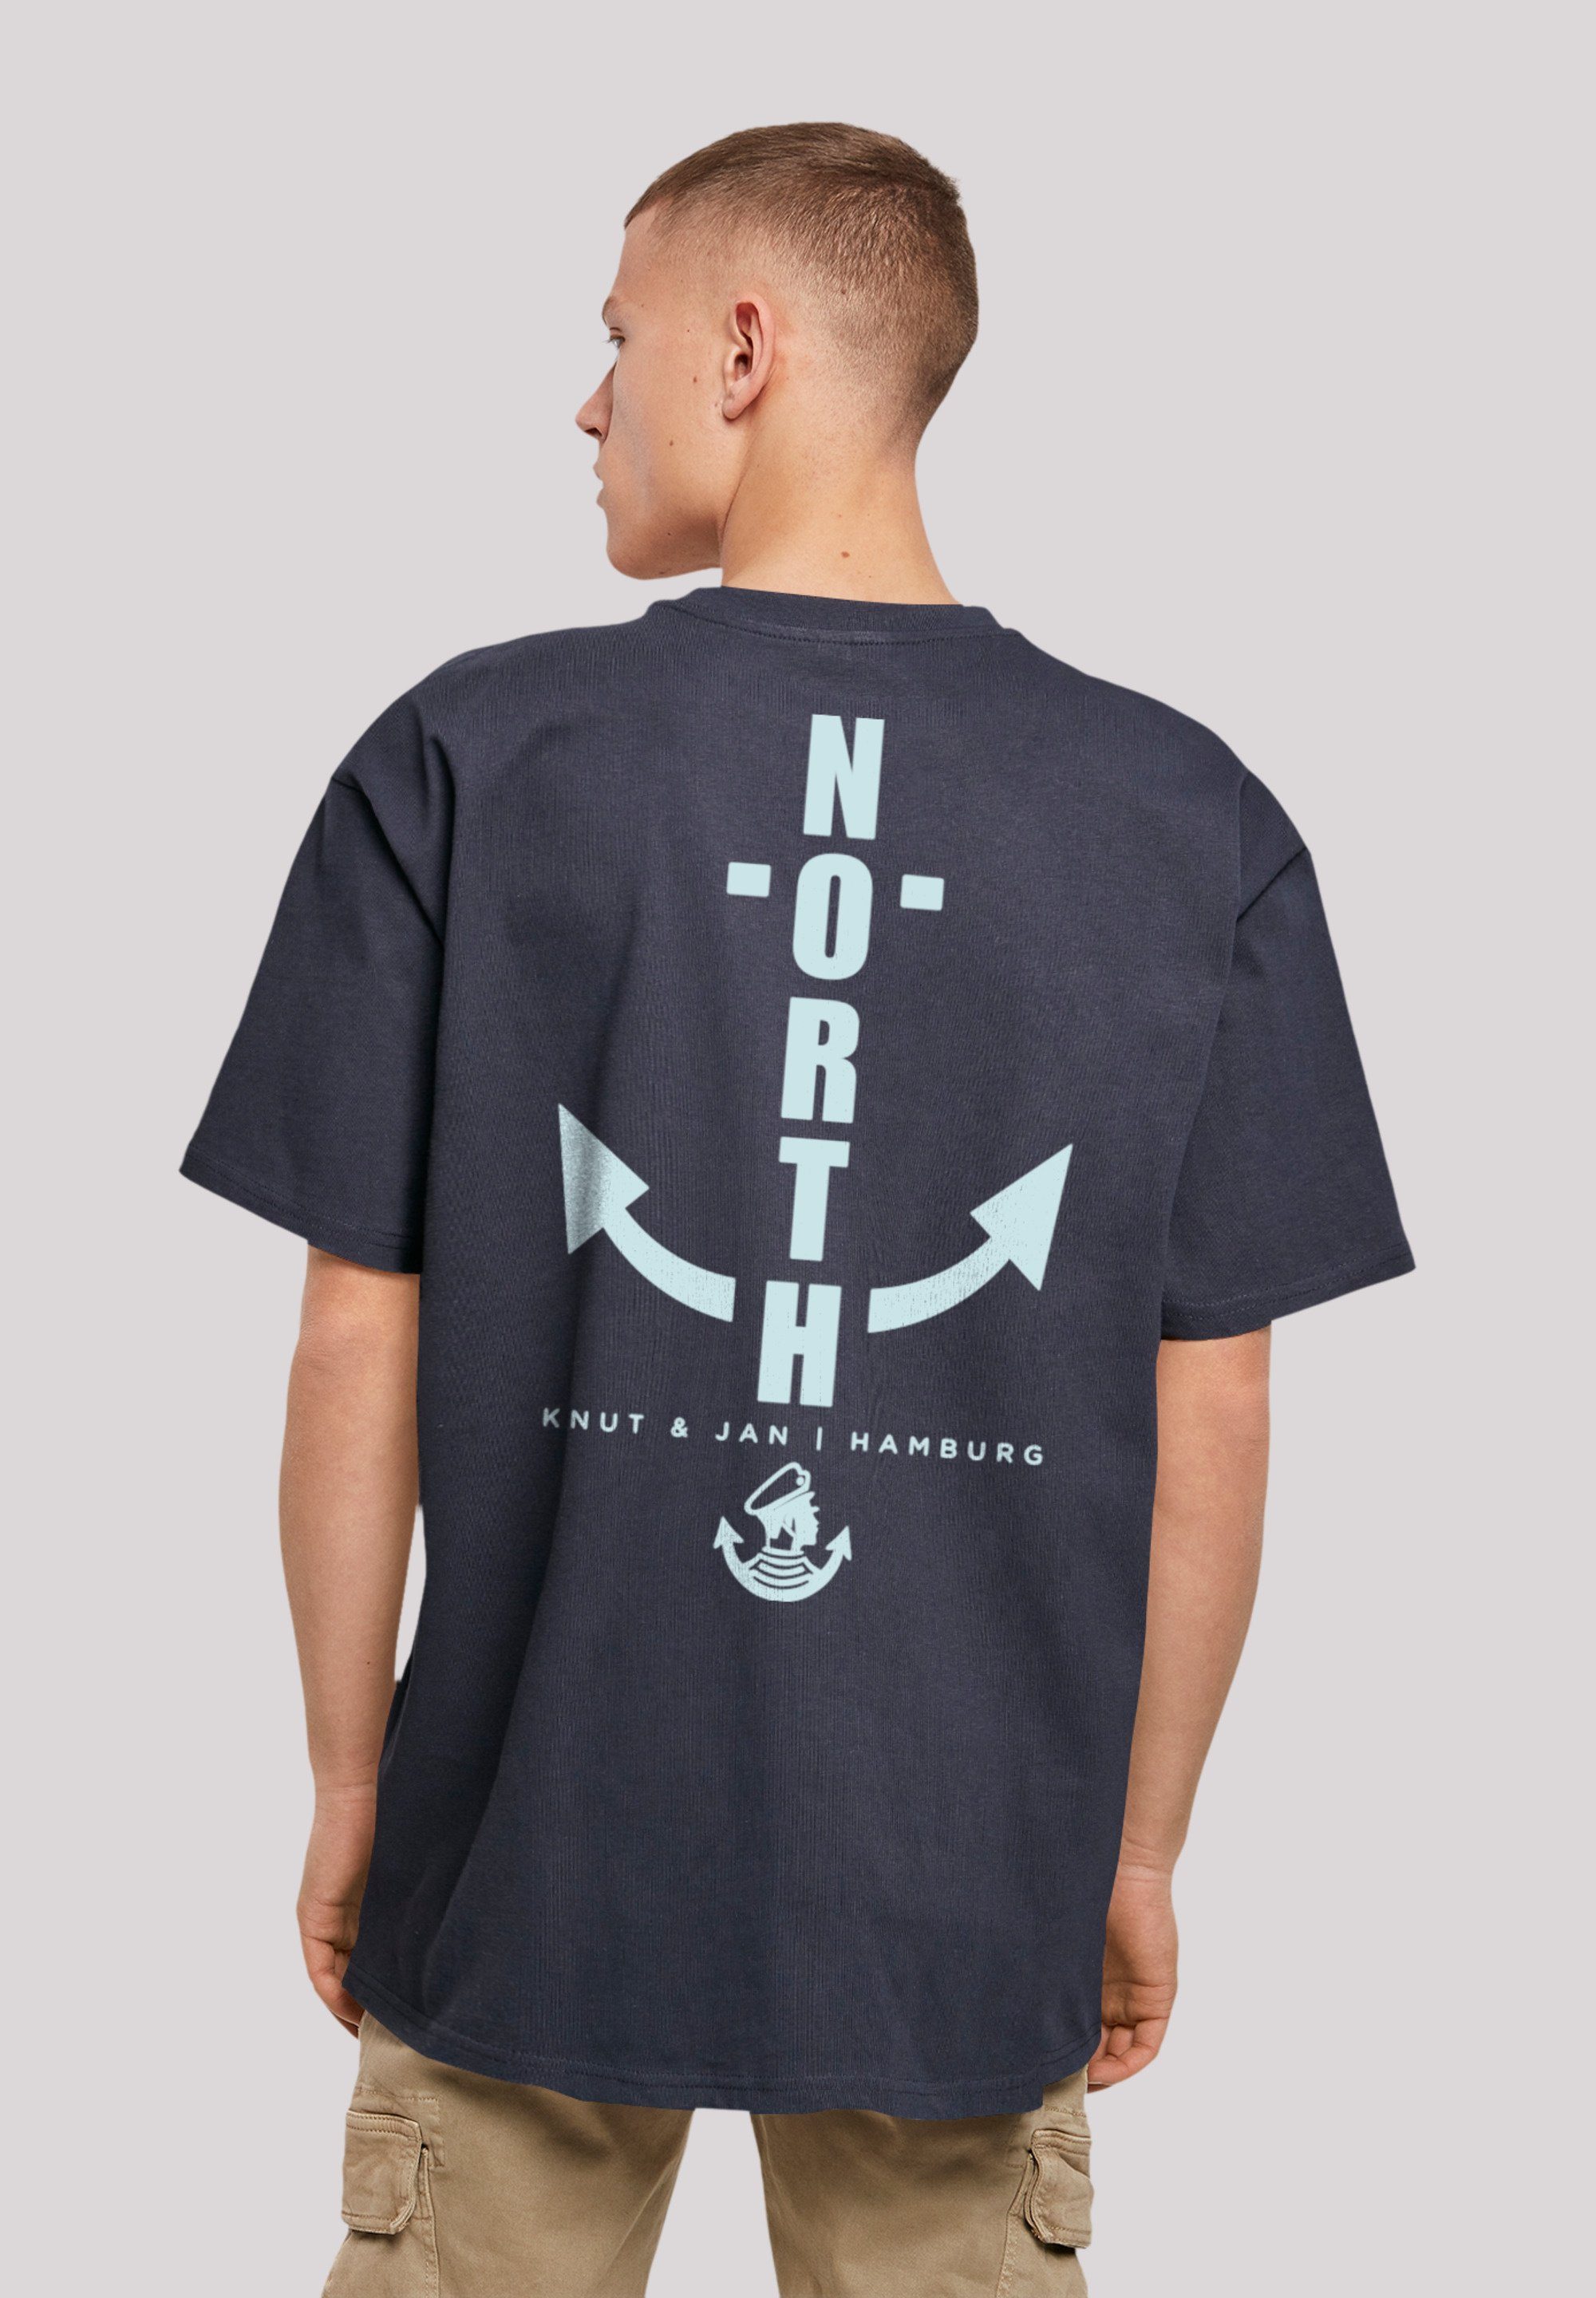 Jan F4NT4STIC Print North T-Shirt Knut & navy Anker Hamburg